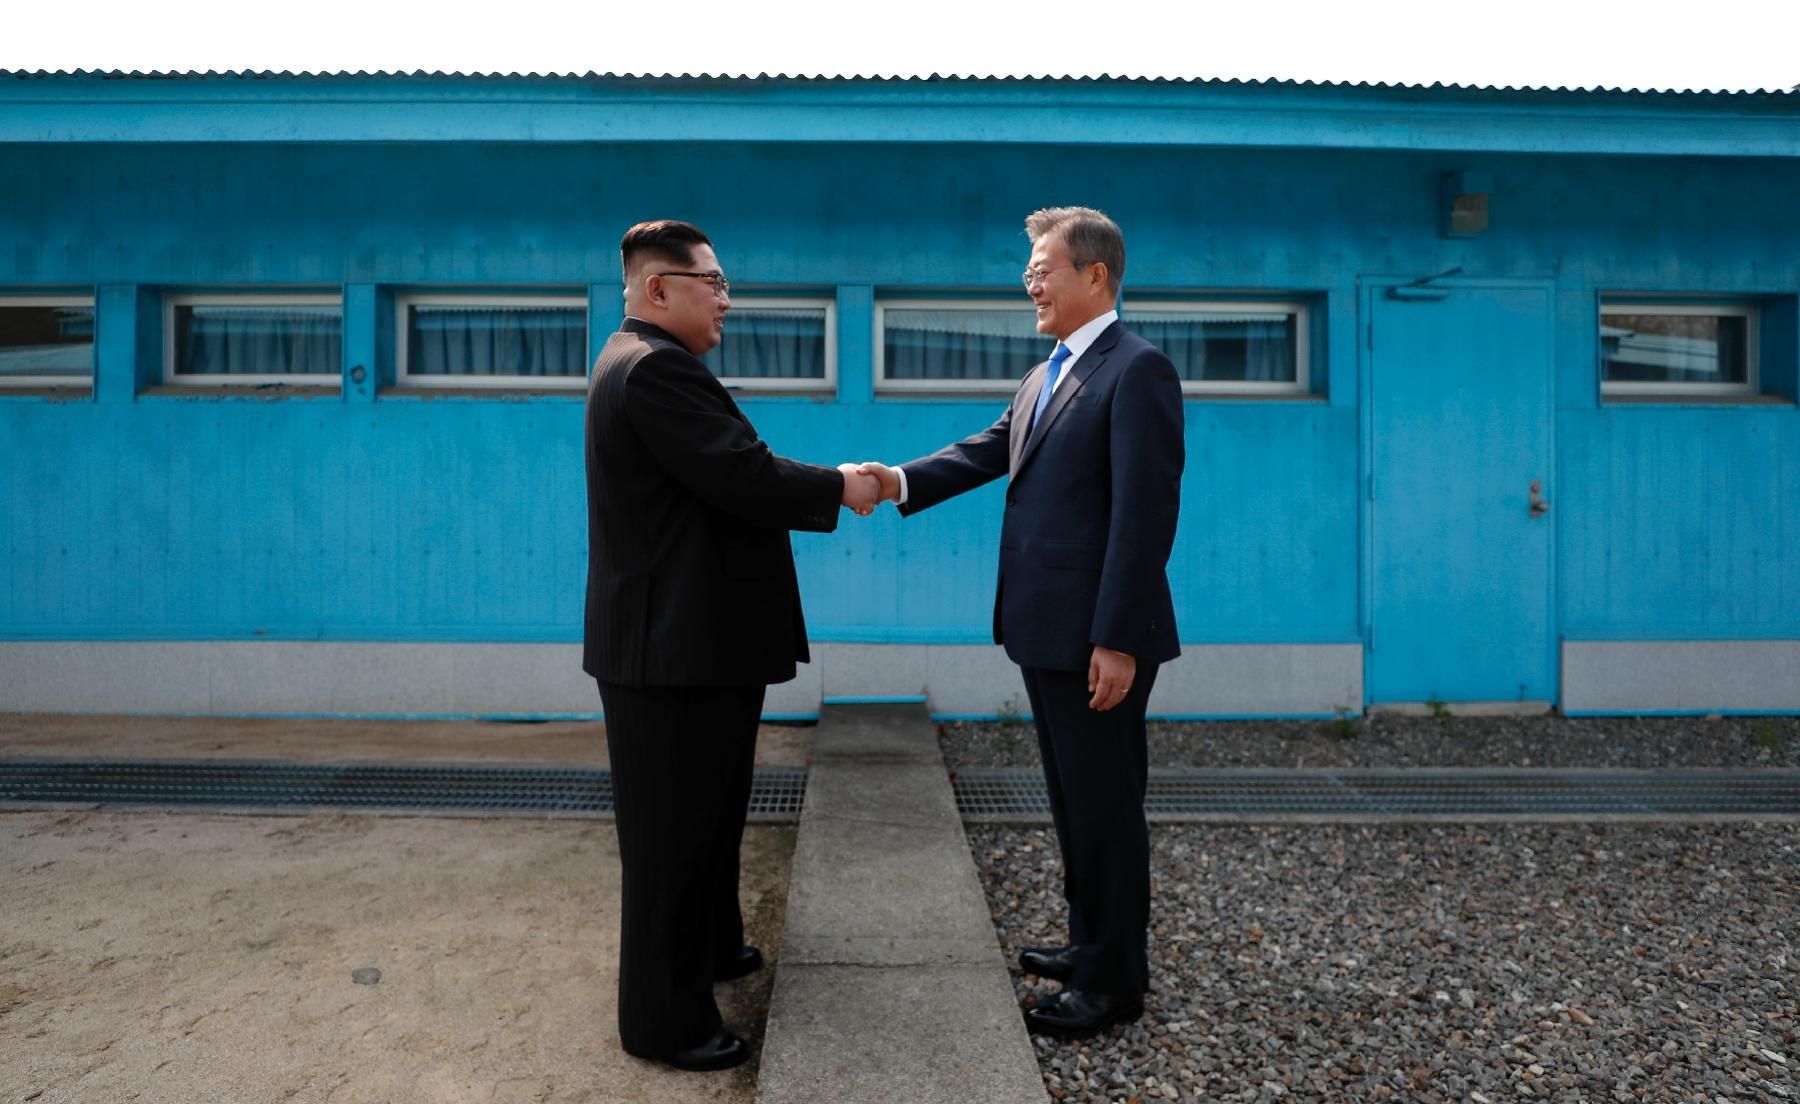 Встреча надежды и реализма: западные СМИ об историческом саммите лидеров двух Корей и результате